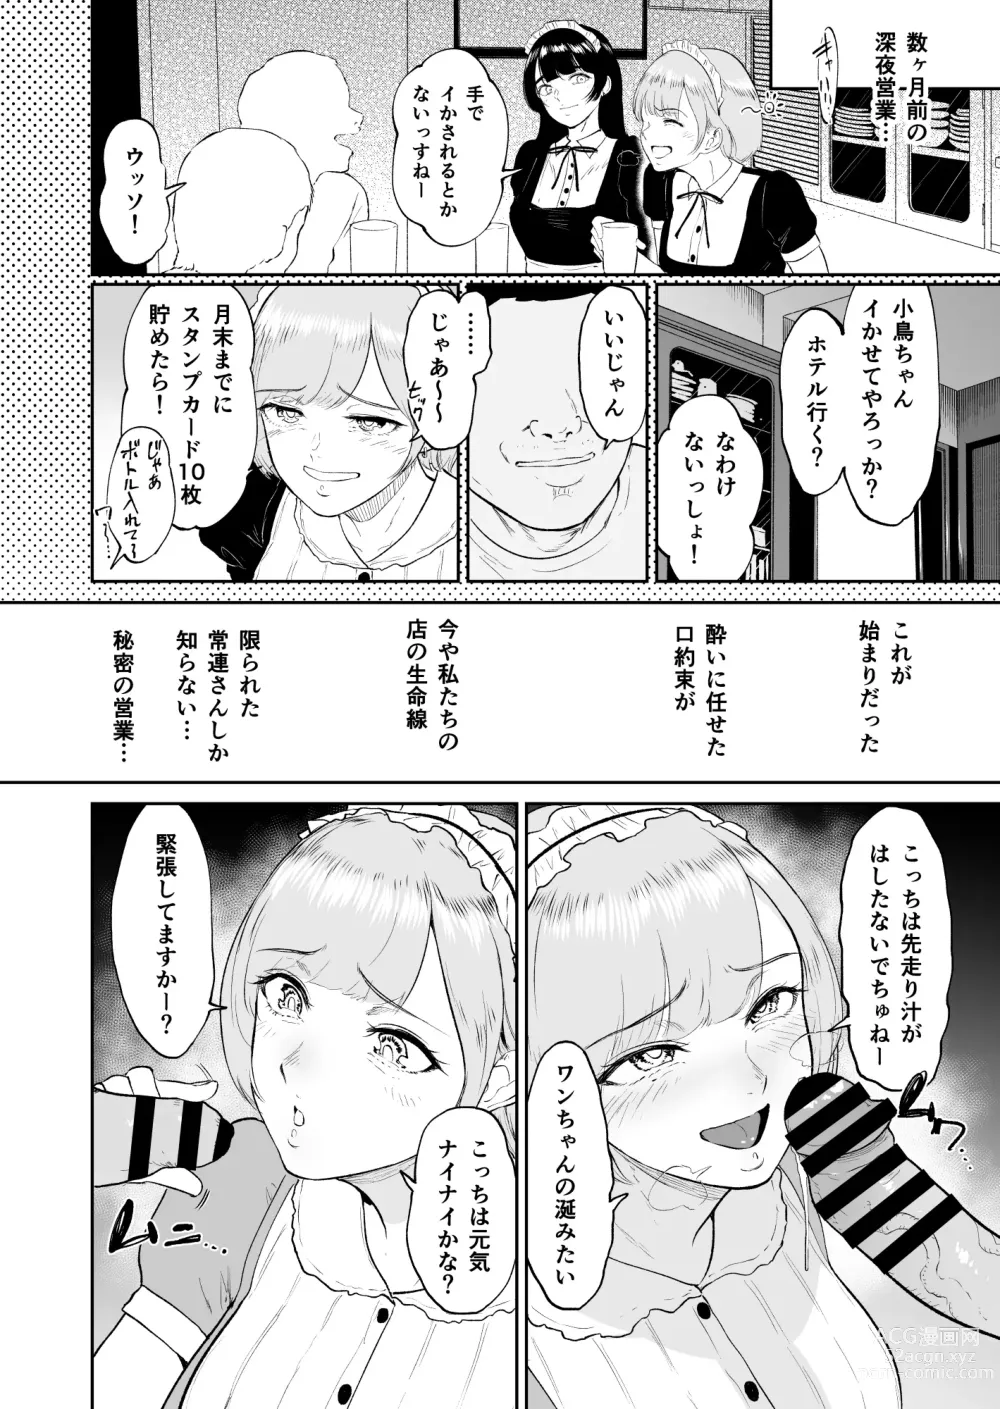 Page 5 of doujinshi Kosupuremeido no shinya eigyō 〜 to aru meidokonkafe no midarana ura eigyō 〜